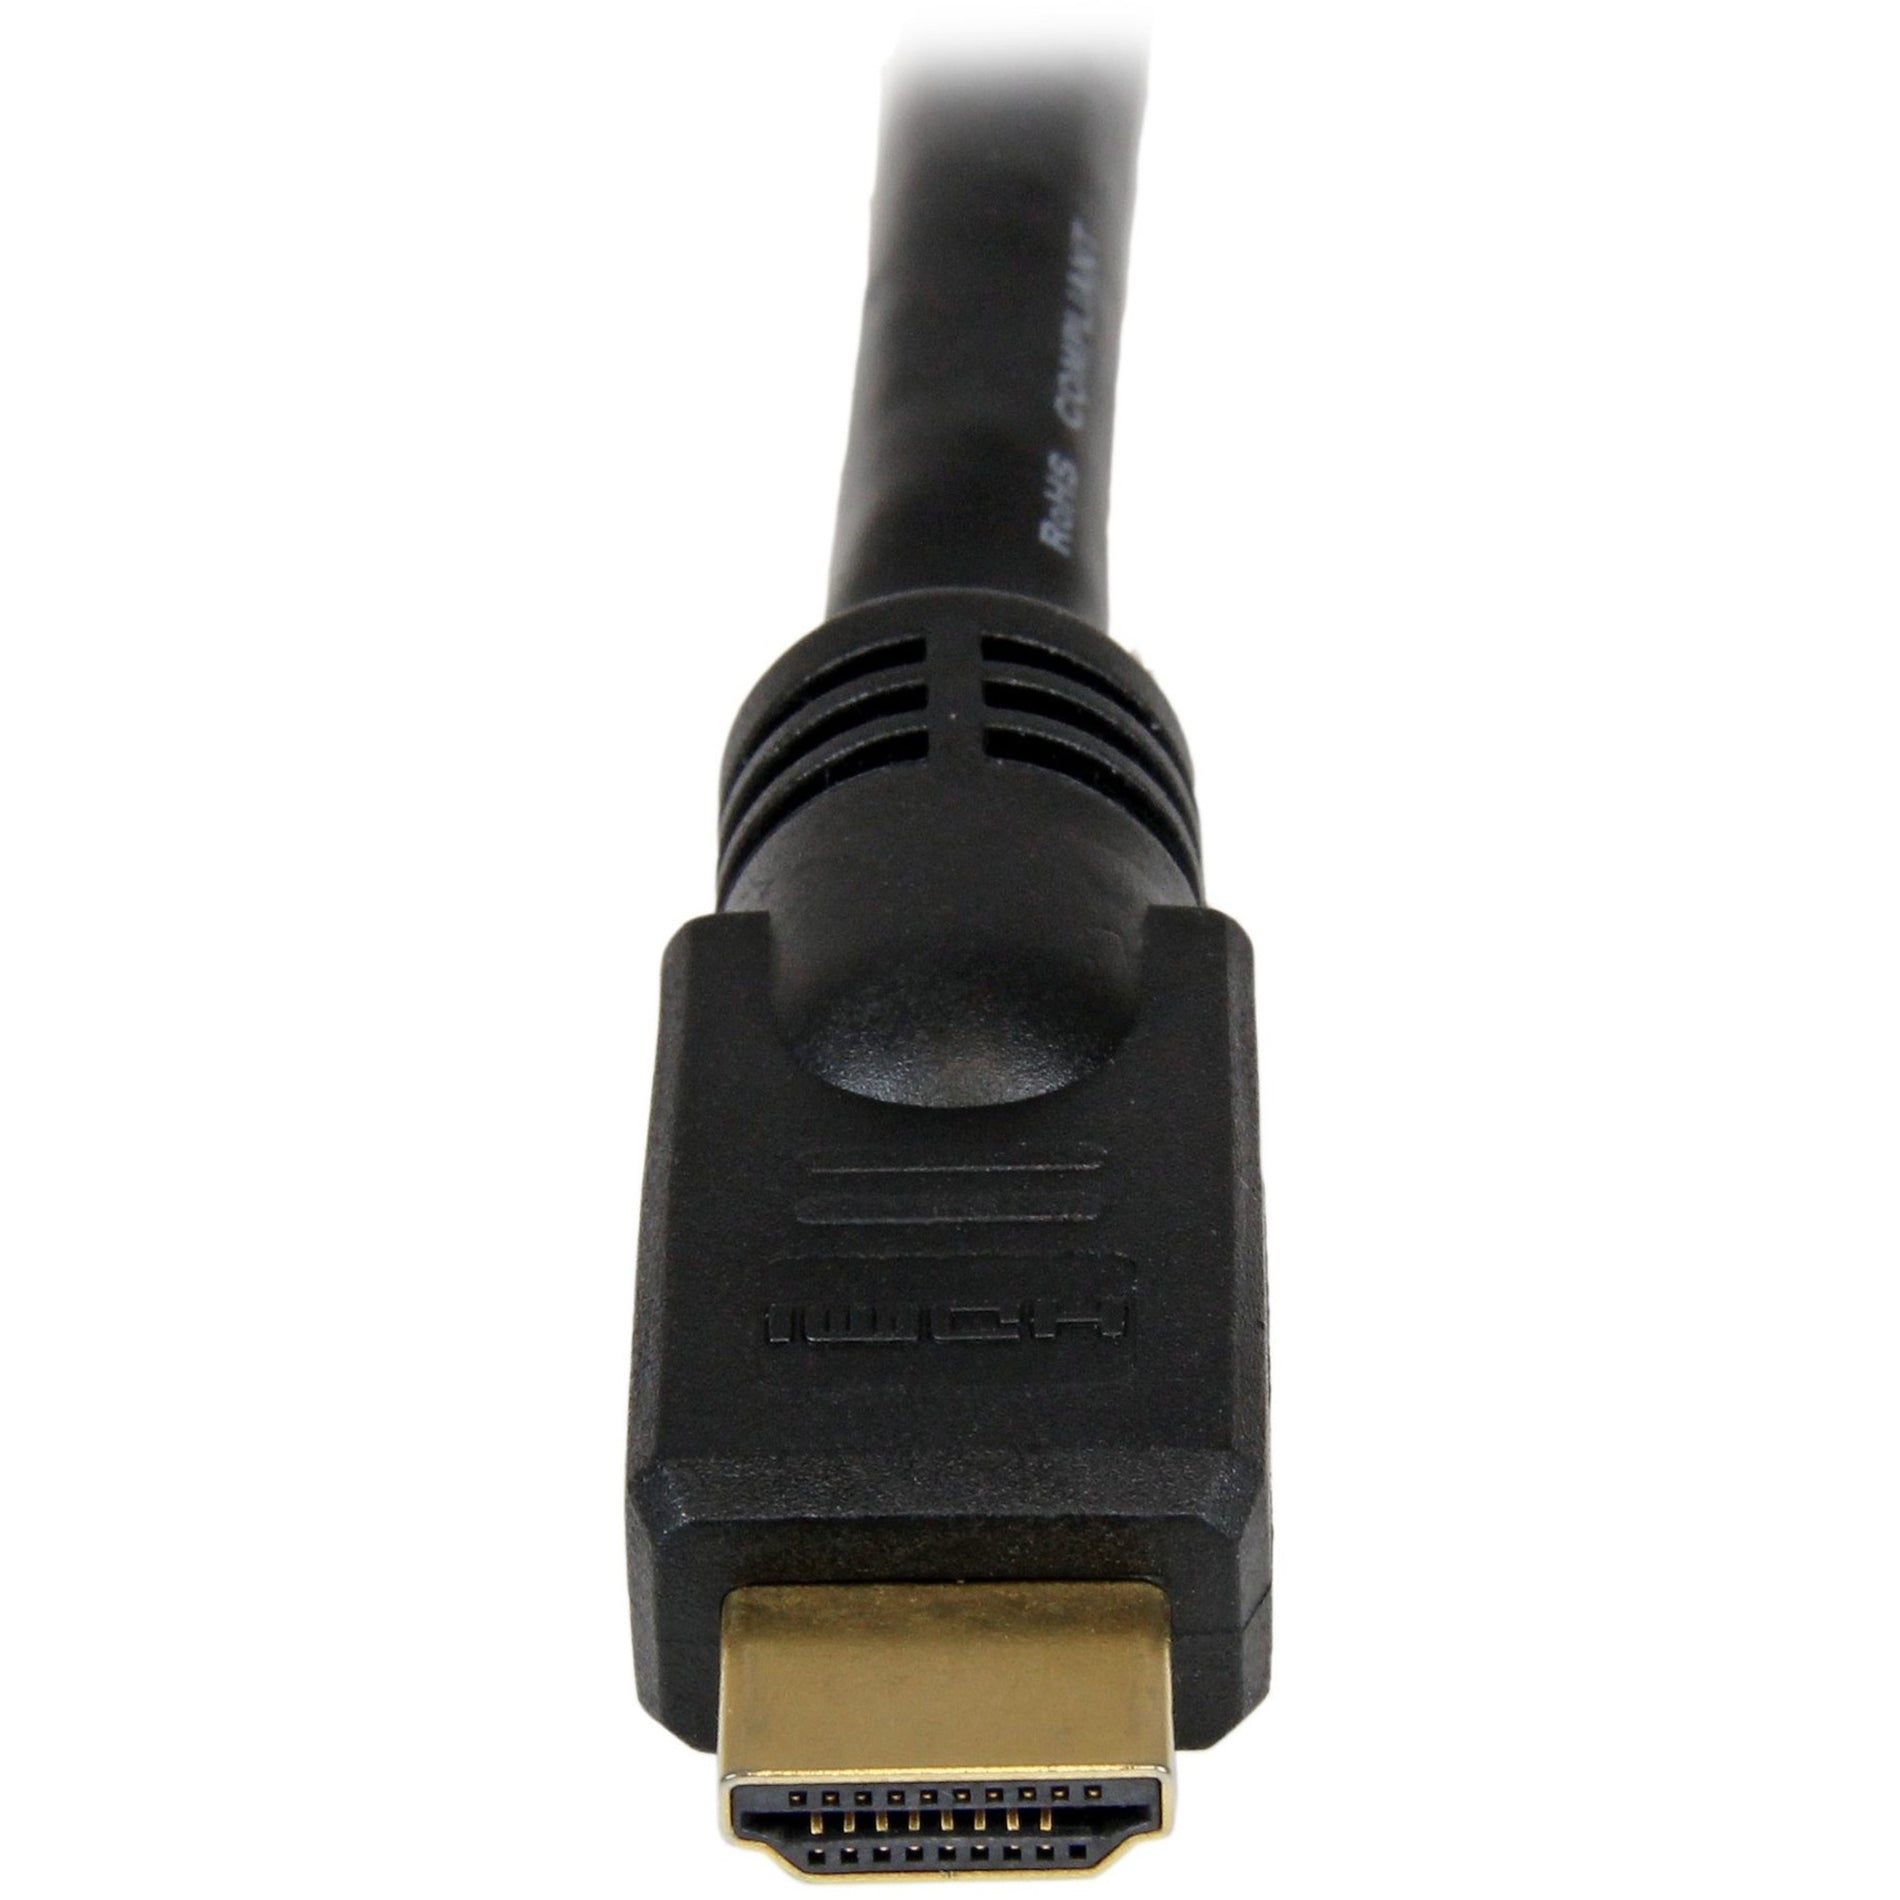 StarTech.com HDMM50 50 ft High Speed HDMI Cable - 4K @ 30Hz No Signal Booster Required  StarTech.com Câble HDMI haute vitesse de 50 pieds HDMM50 - 4K @ 30Hz aucun amplificateur de signal requis.